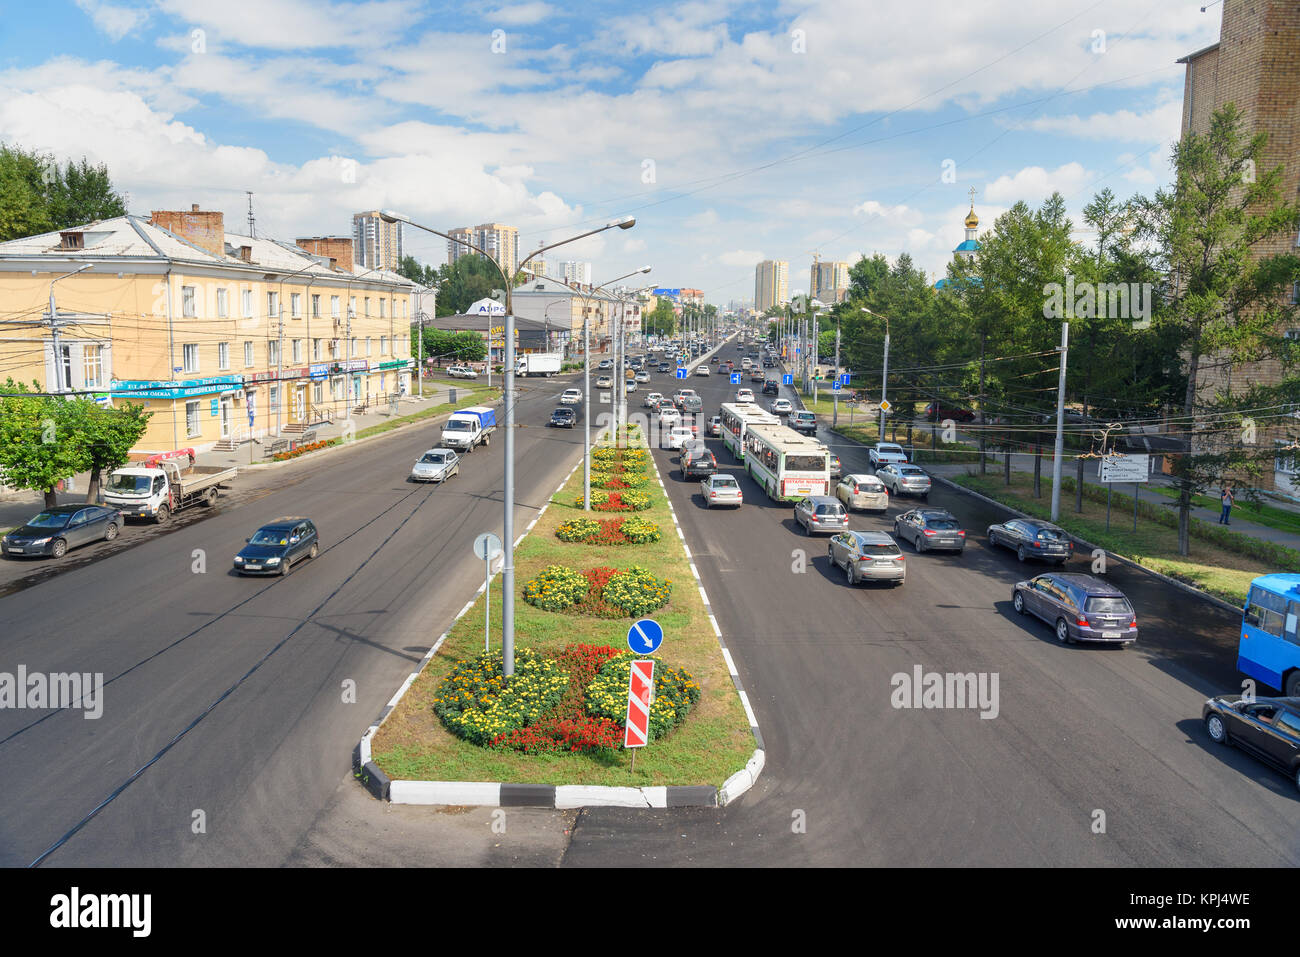 Krasnoyarsk, Russia- August 11, 2017: View on street Partisan Zheleznyak in Sibirian city Krasnoyarsk Stock Photo